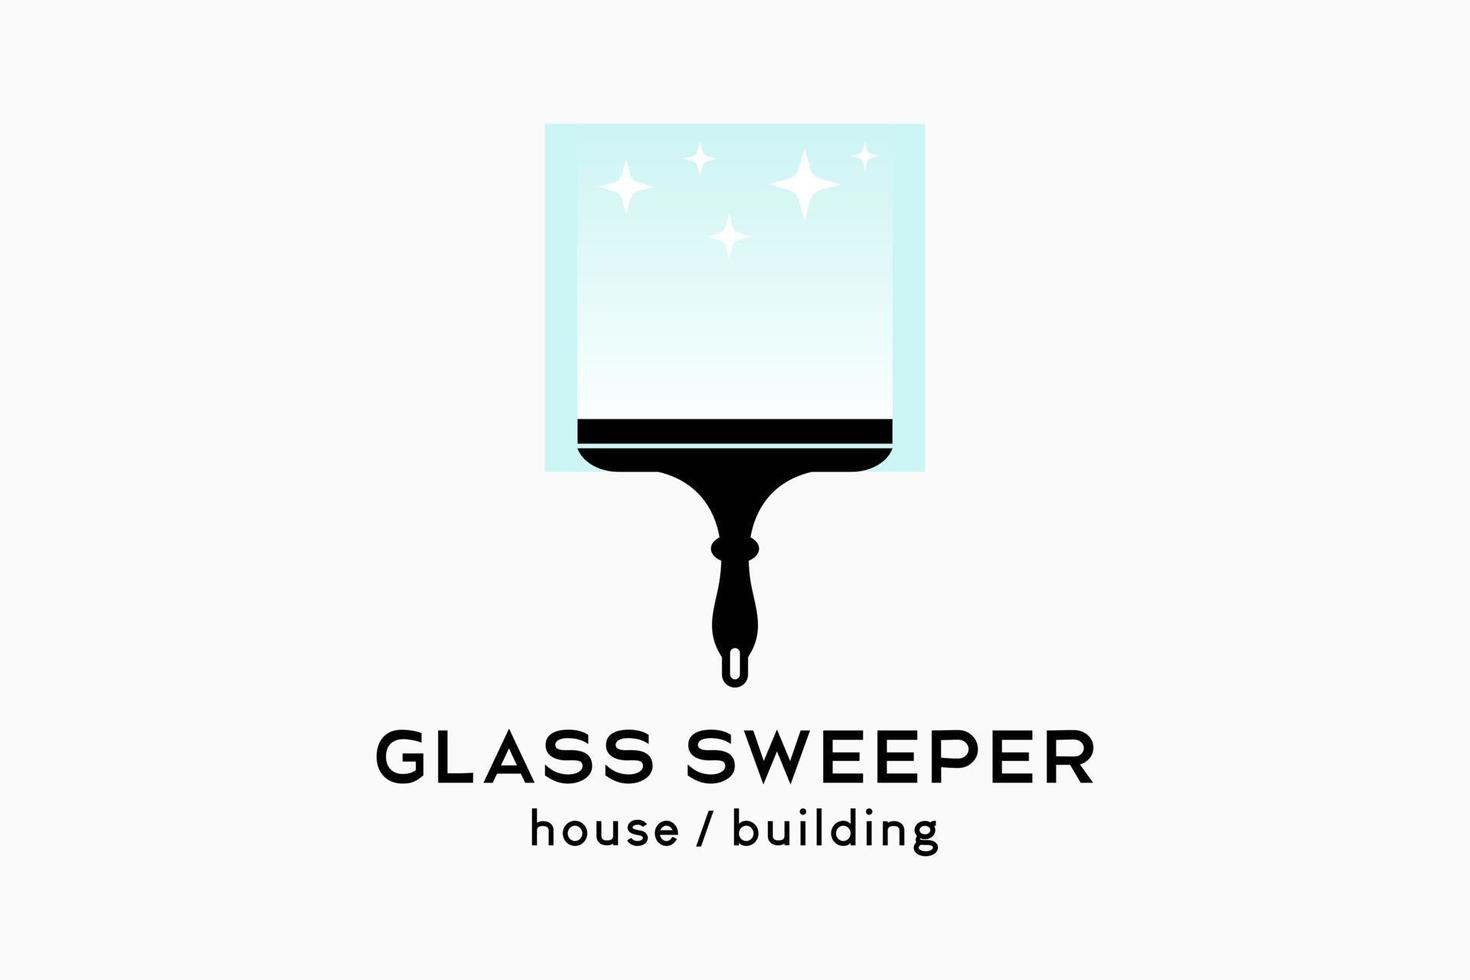 création de logo de nettoyant pour vitres ou de balayeuse de vitres, silhouette d'un nettoyant pour vitres en caoutchouc combiné à une icône de verre dans une boîte vecteur